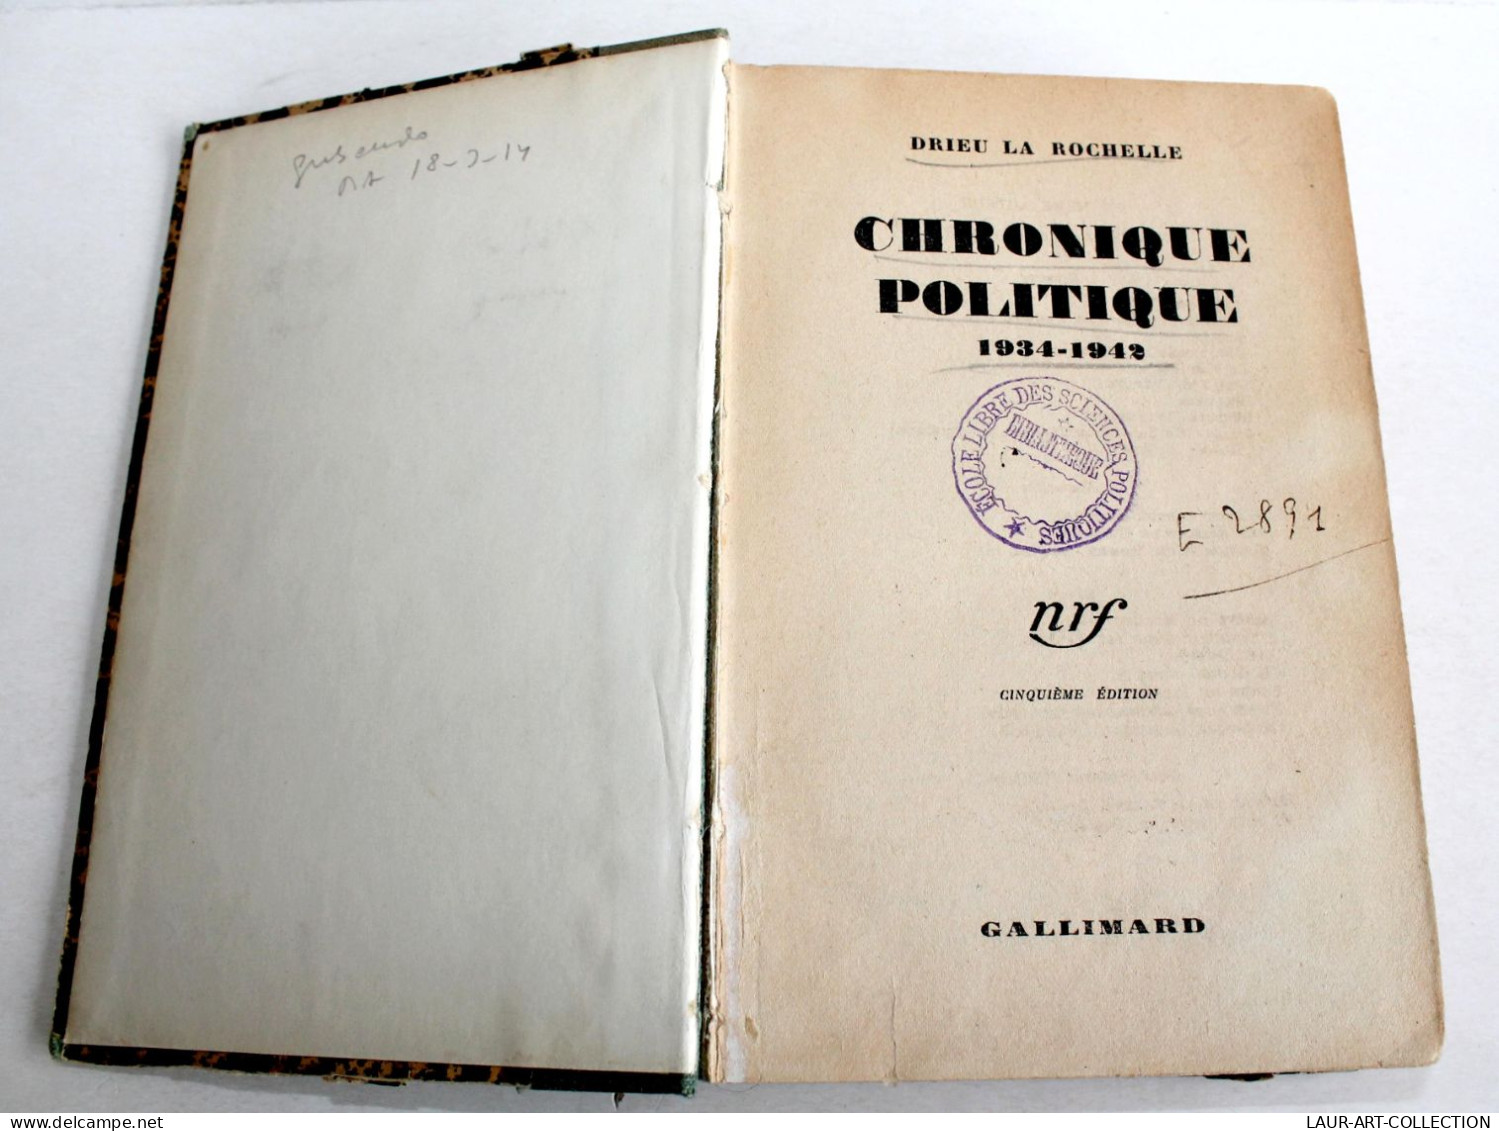 CHRONIQUE POLITIQUE 1934-1942 Par DRIEU LA ROCHELLE, 5e EDITION 1943 GALLIMARD / ANCIEN LIVRE XXe SIECLE (2603.131) - Politique